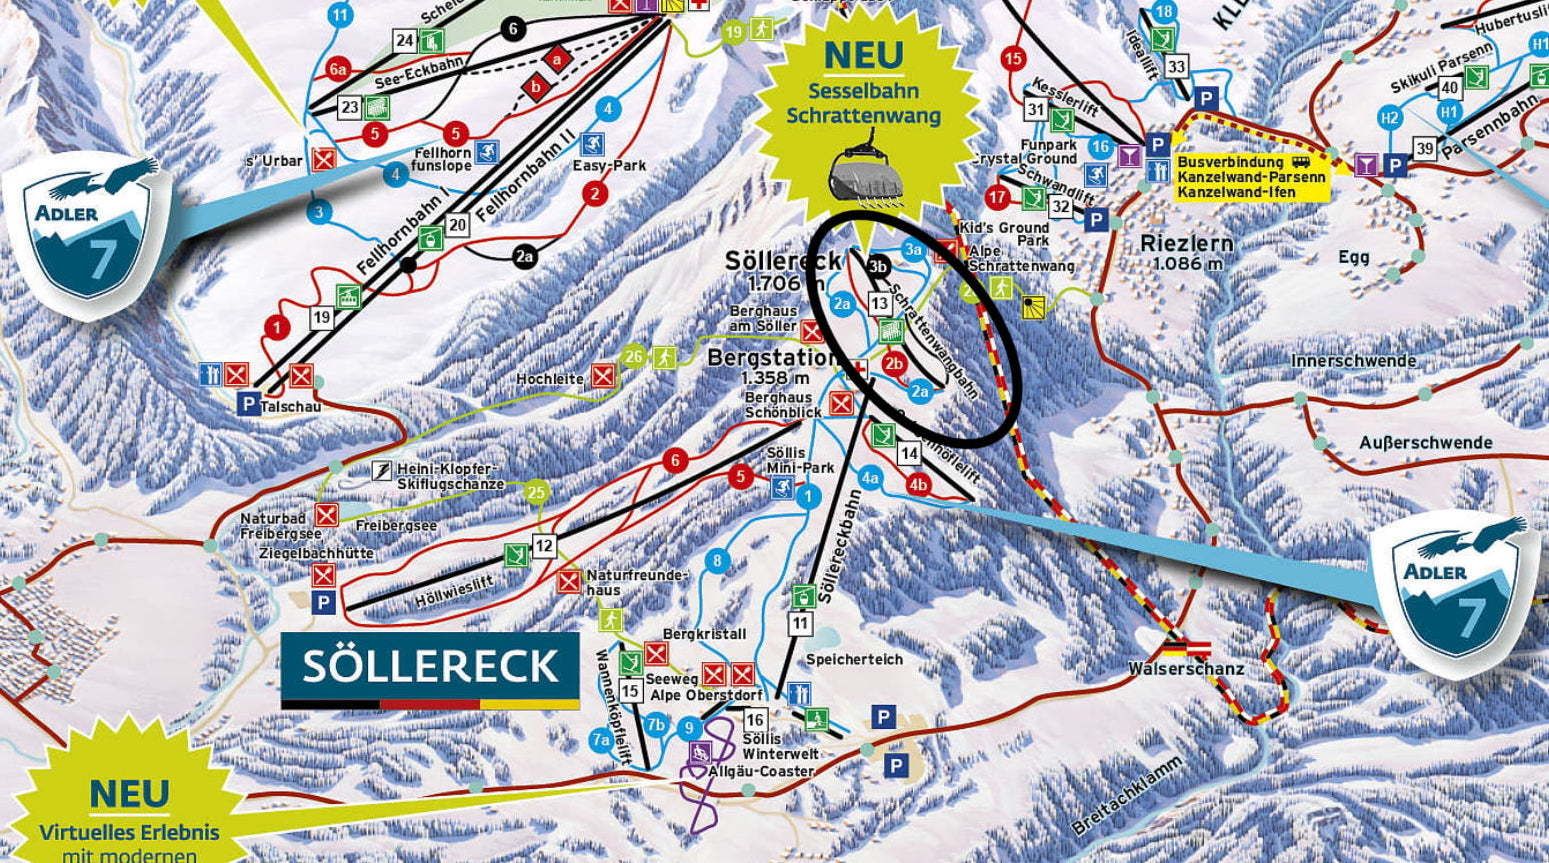 Het nieuwe pistekaartje van Söllereck met de nieuwe Schrattenwangbahn in het zwart omcirkeld